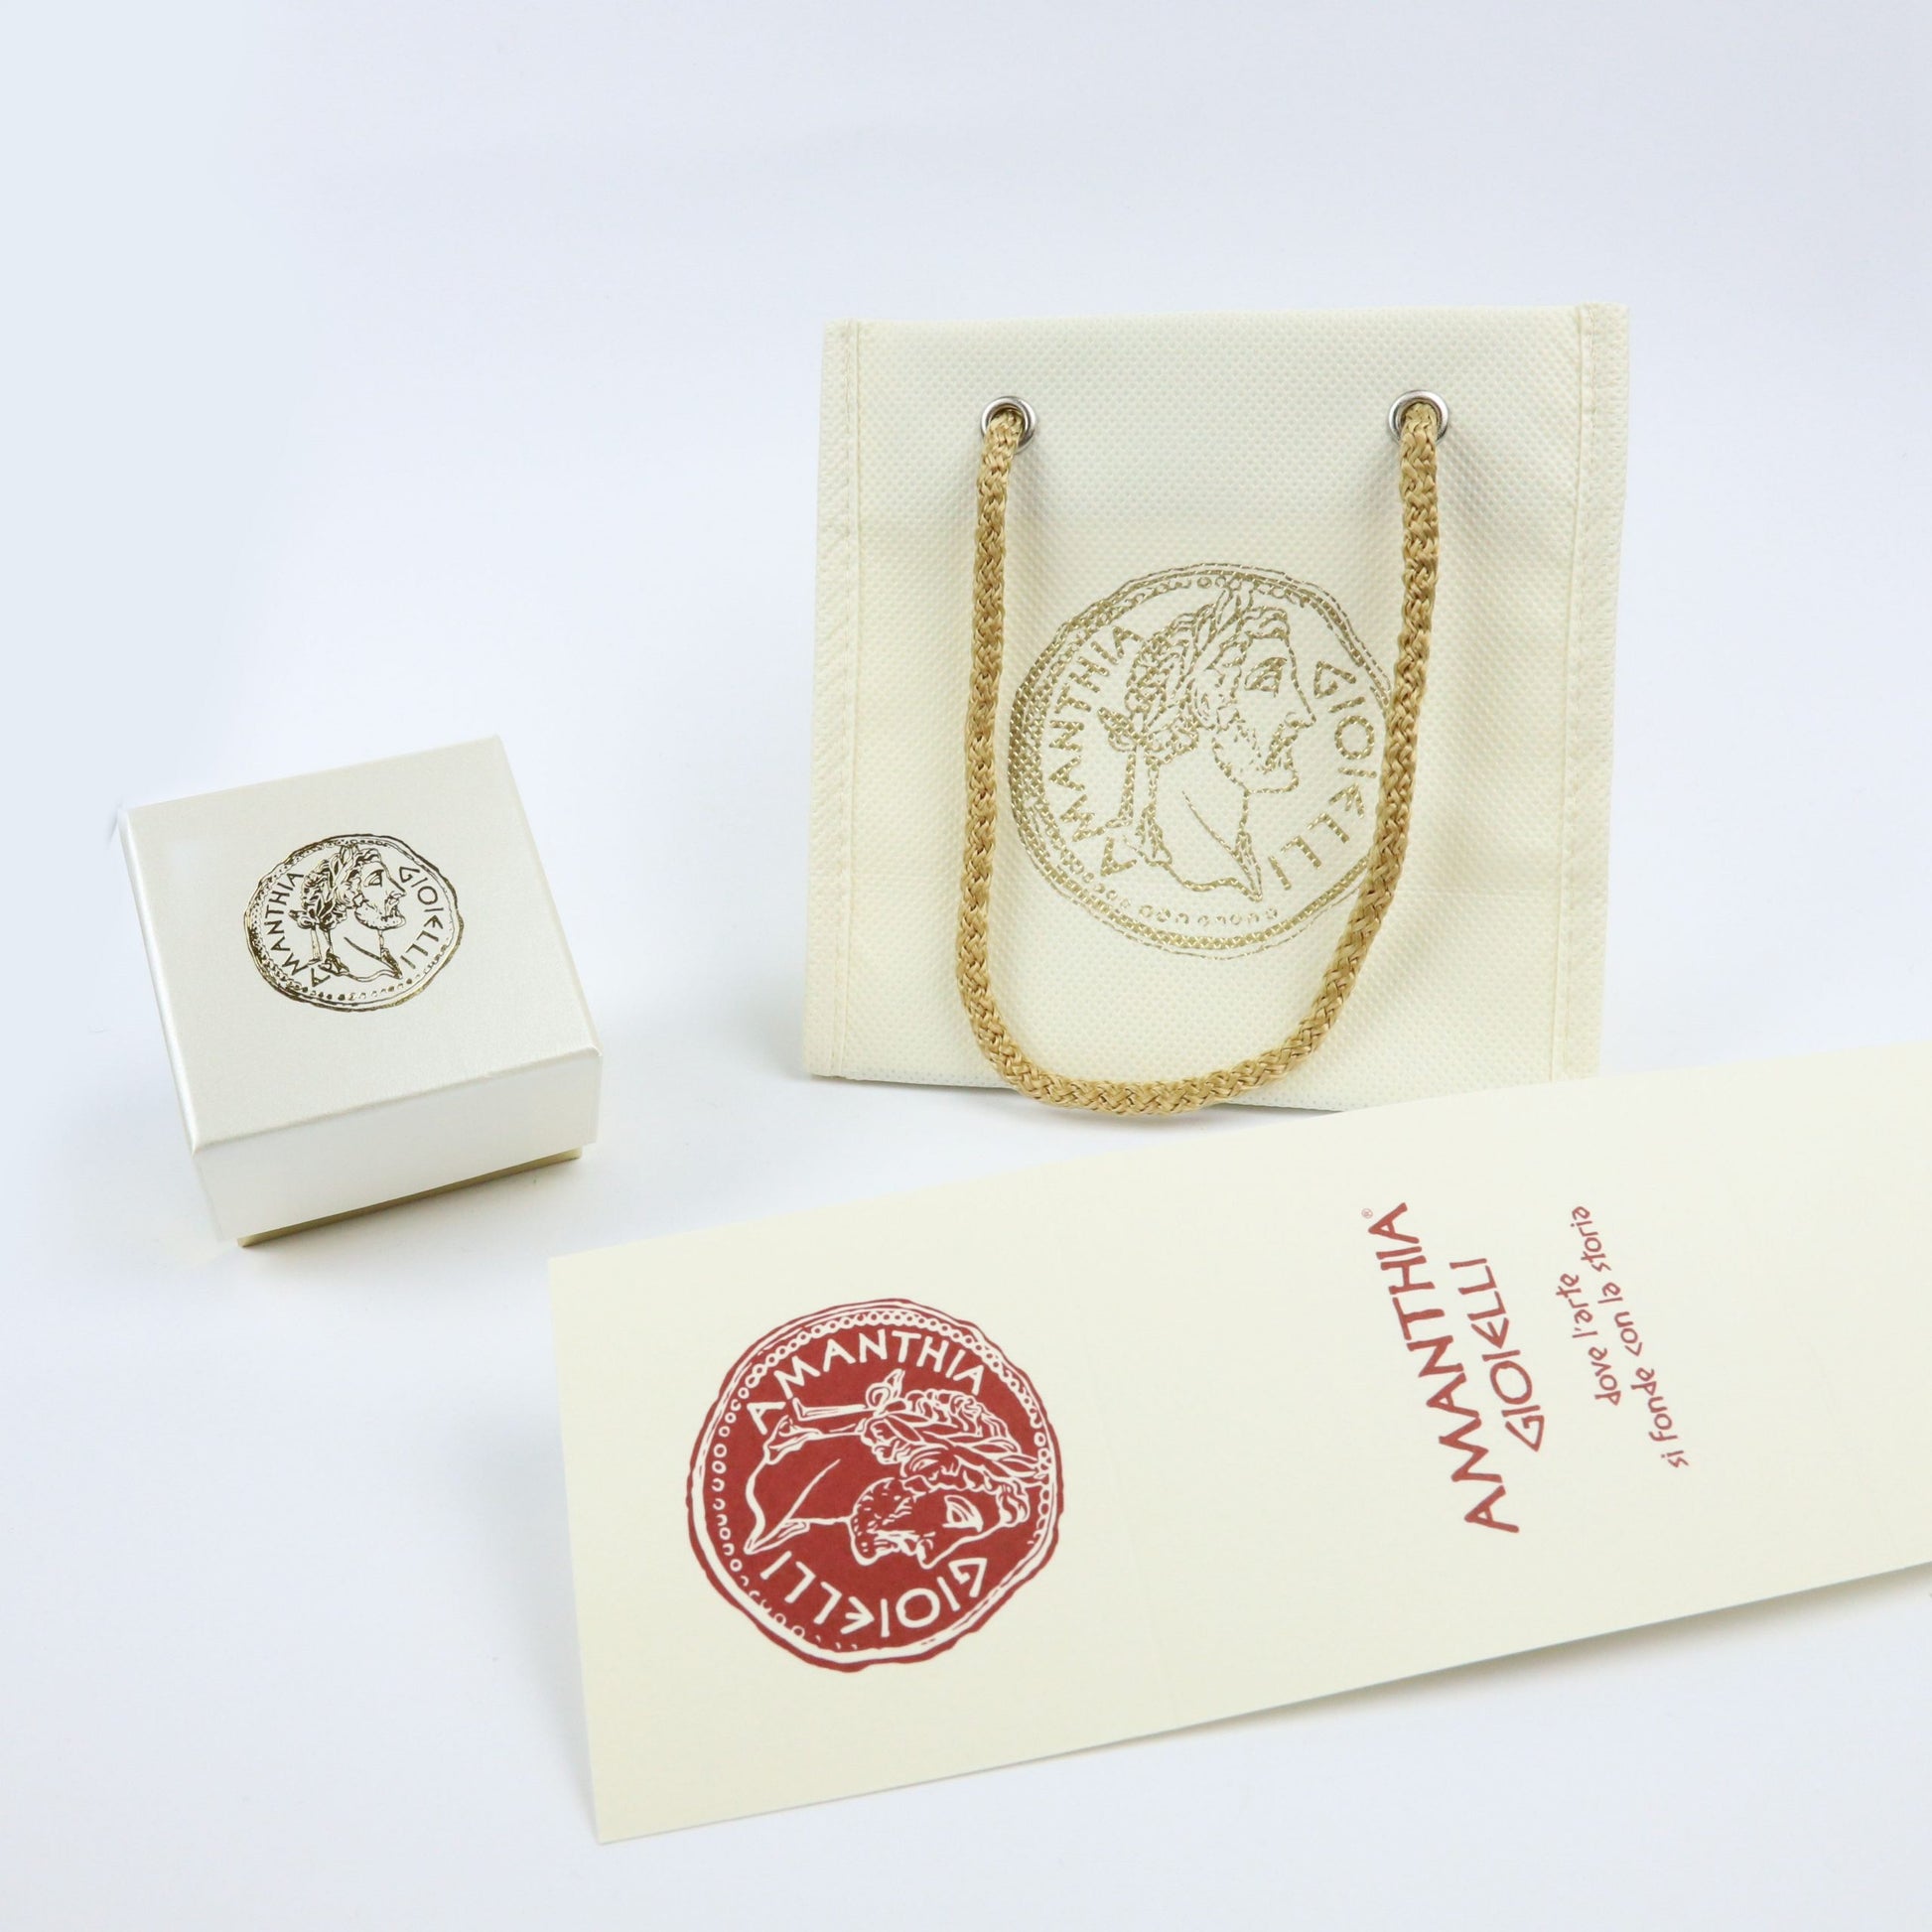 Bracciale rigido 5 fili in Argento dorato con moneta d'epoca - BR.015  Amanthia   